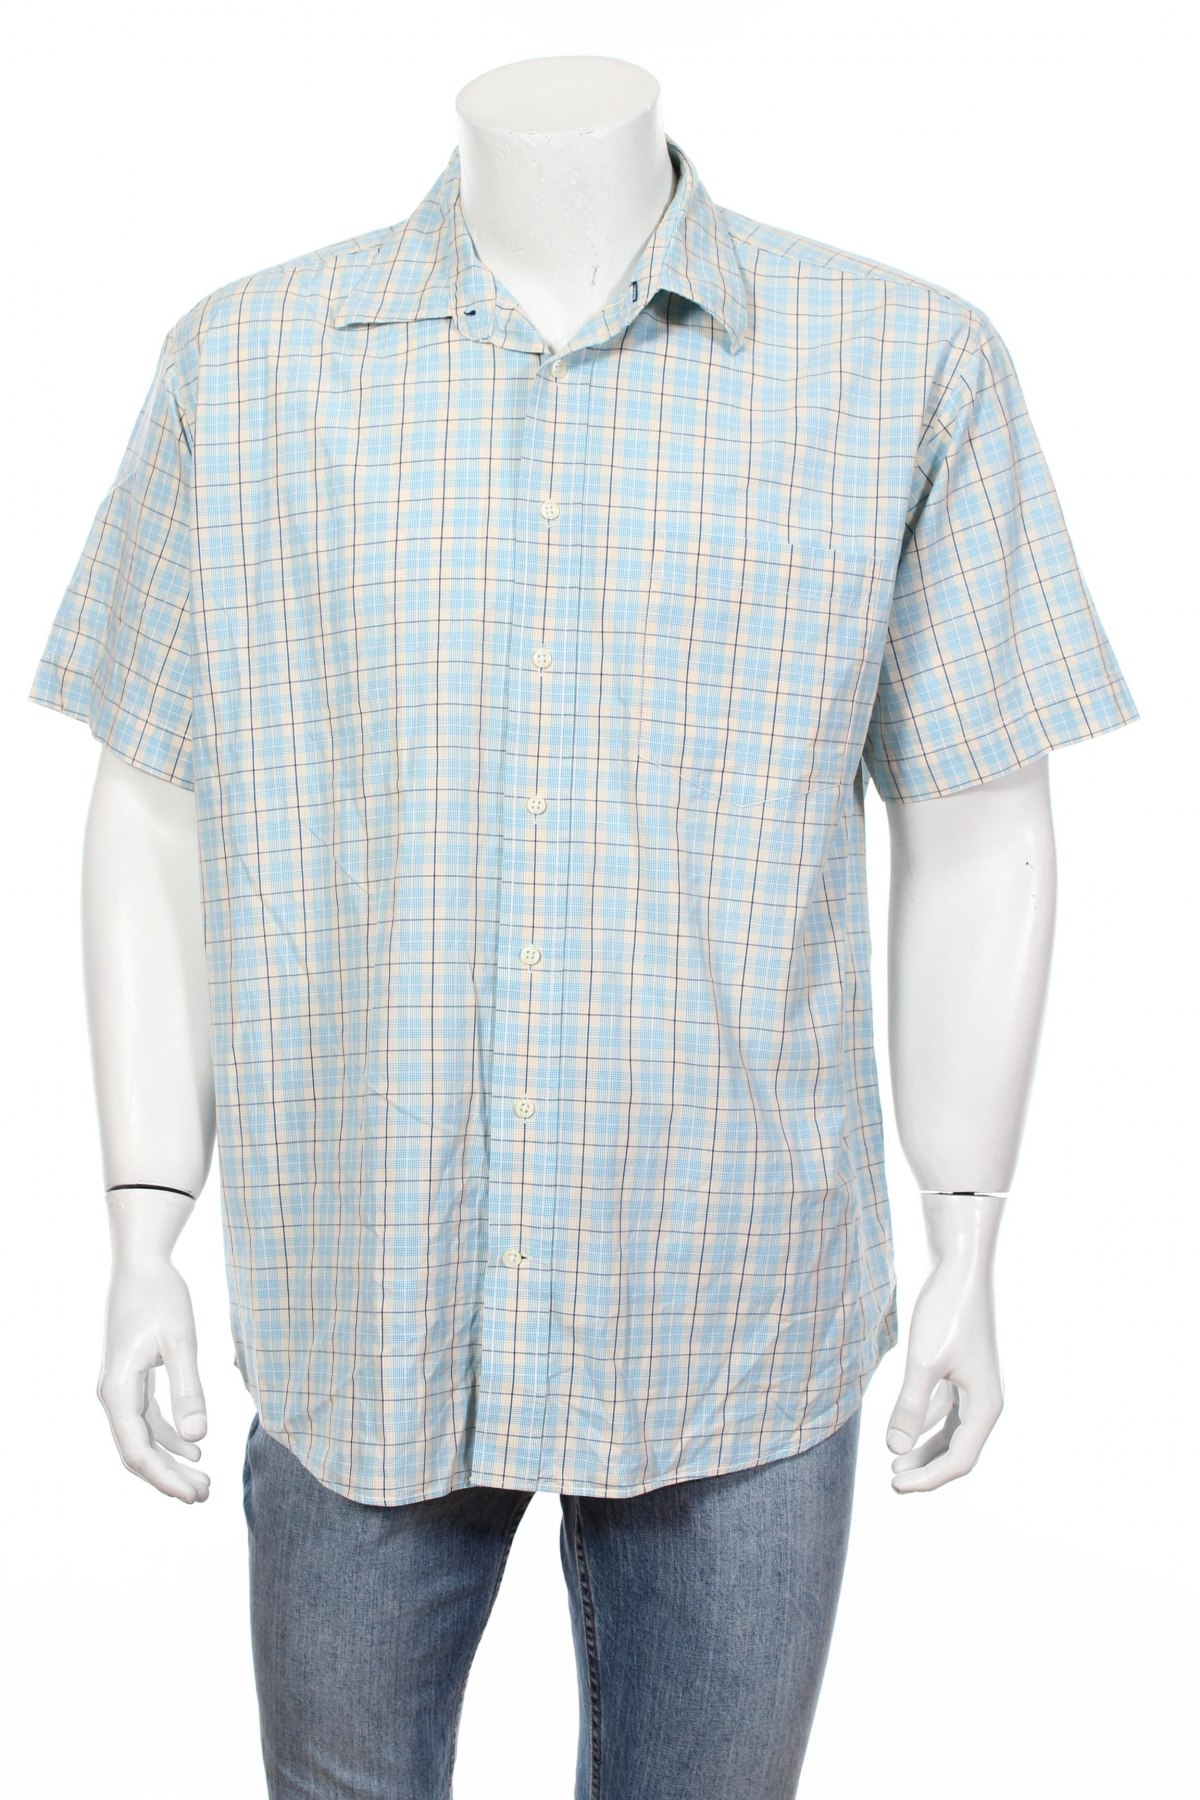 Мъжка риза A.W.Dunmore, Размер XL, Цвят Многоцветен, Цена 17,00 лв.